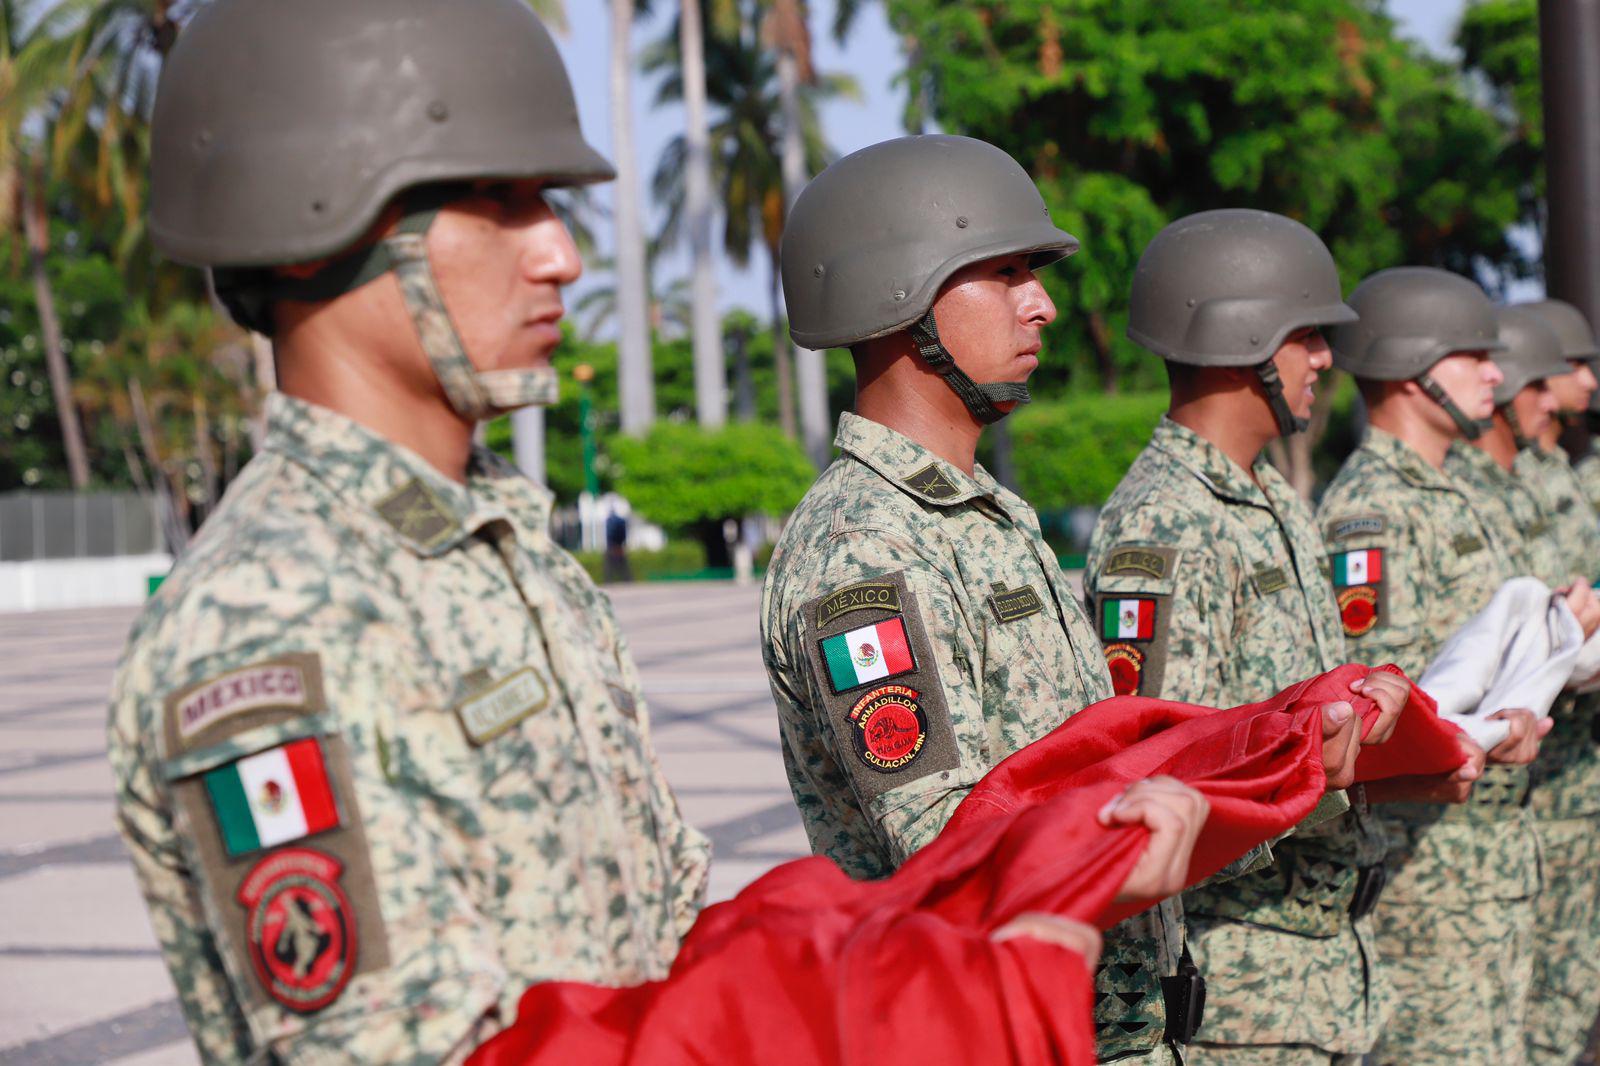 $!Rememoran en Palacio de Gobierno el natalicio de Morelos